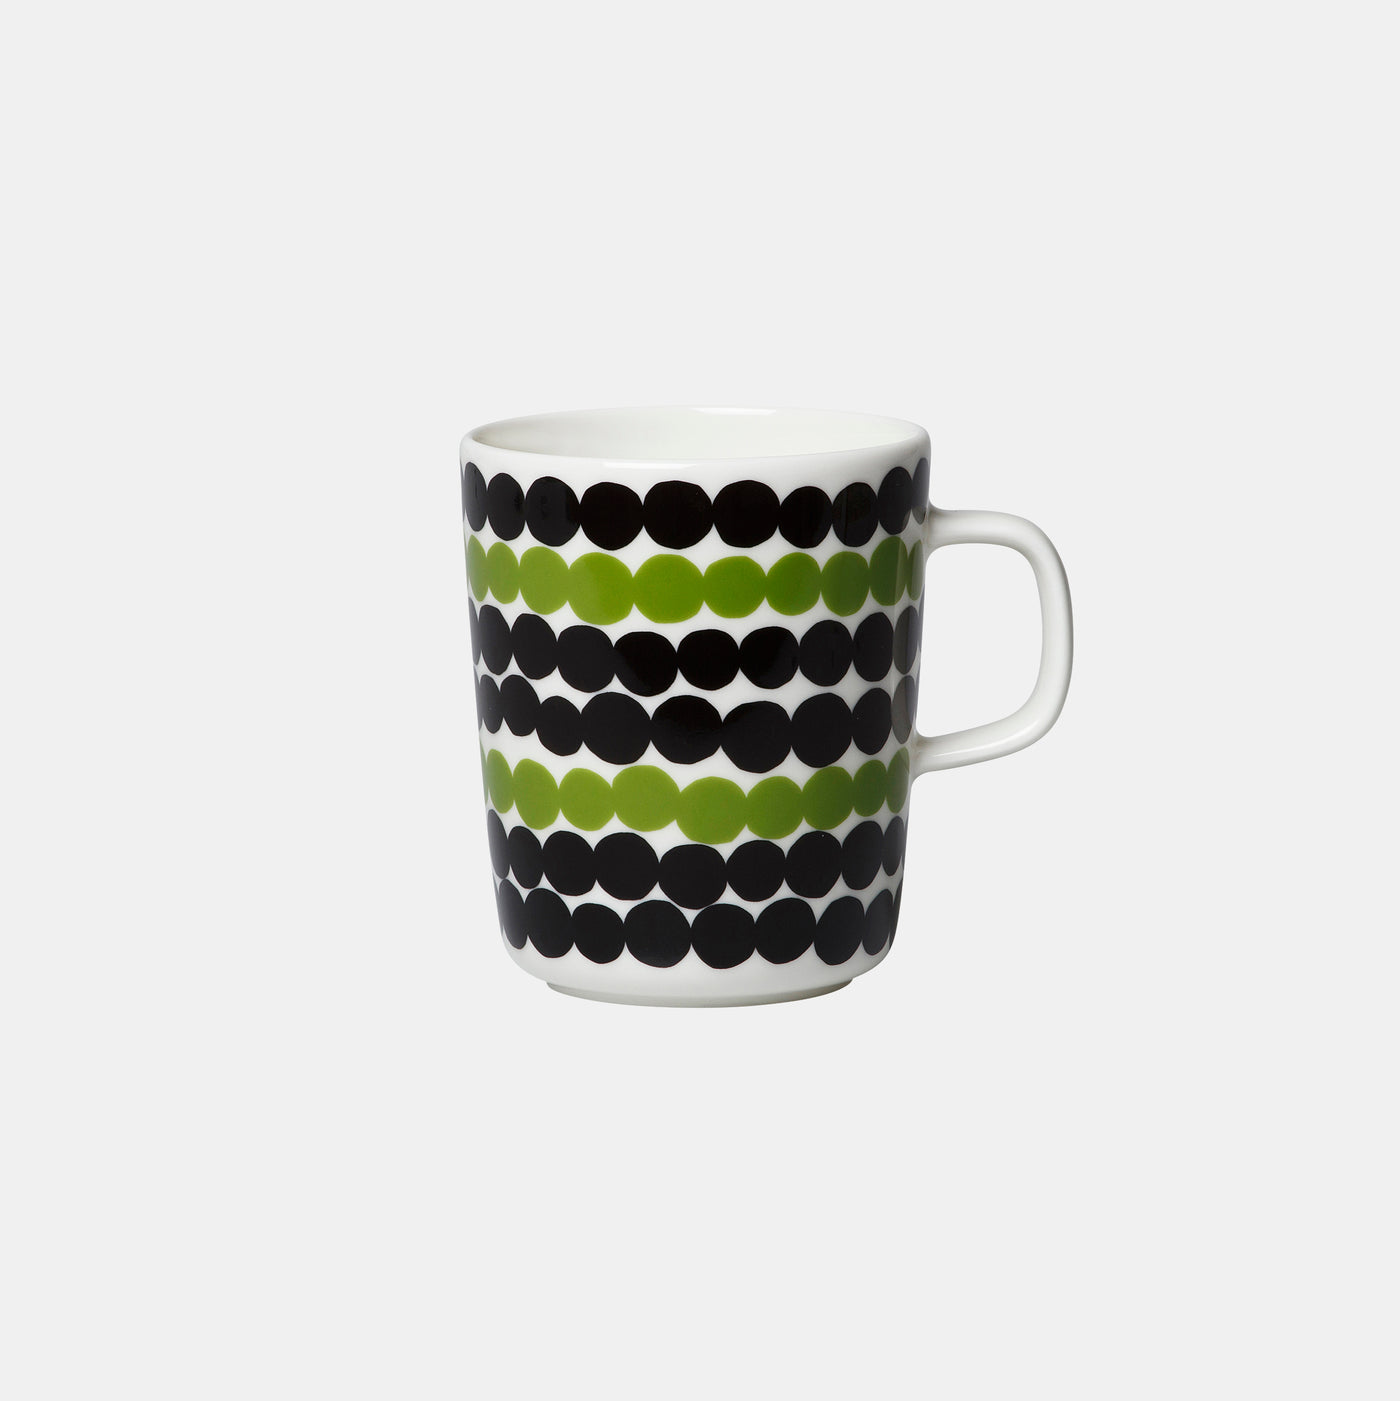 Oiva/Siirtolapuutarha mug 2.5 dl - Black and Green